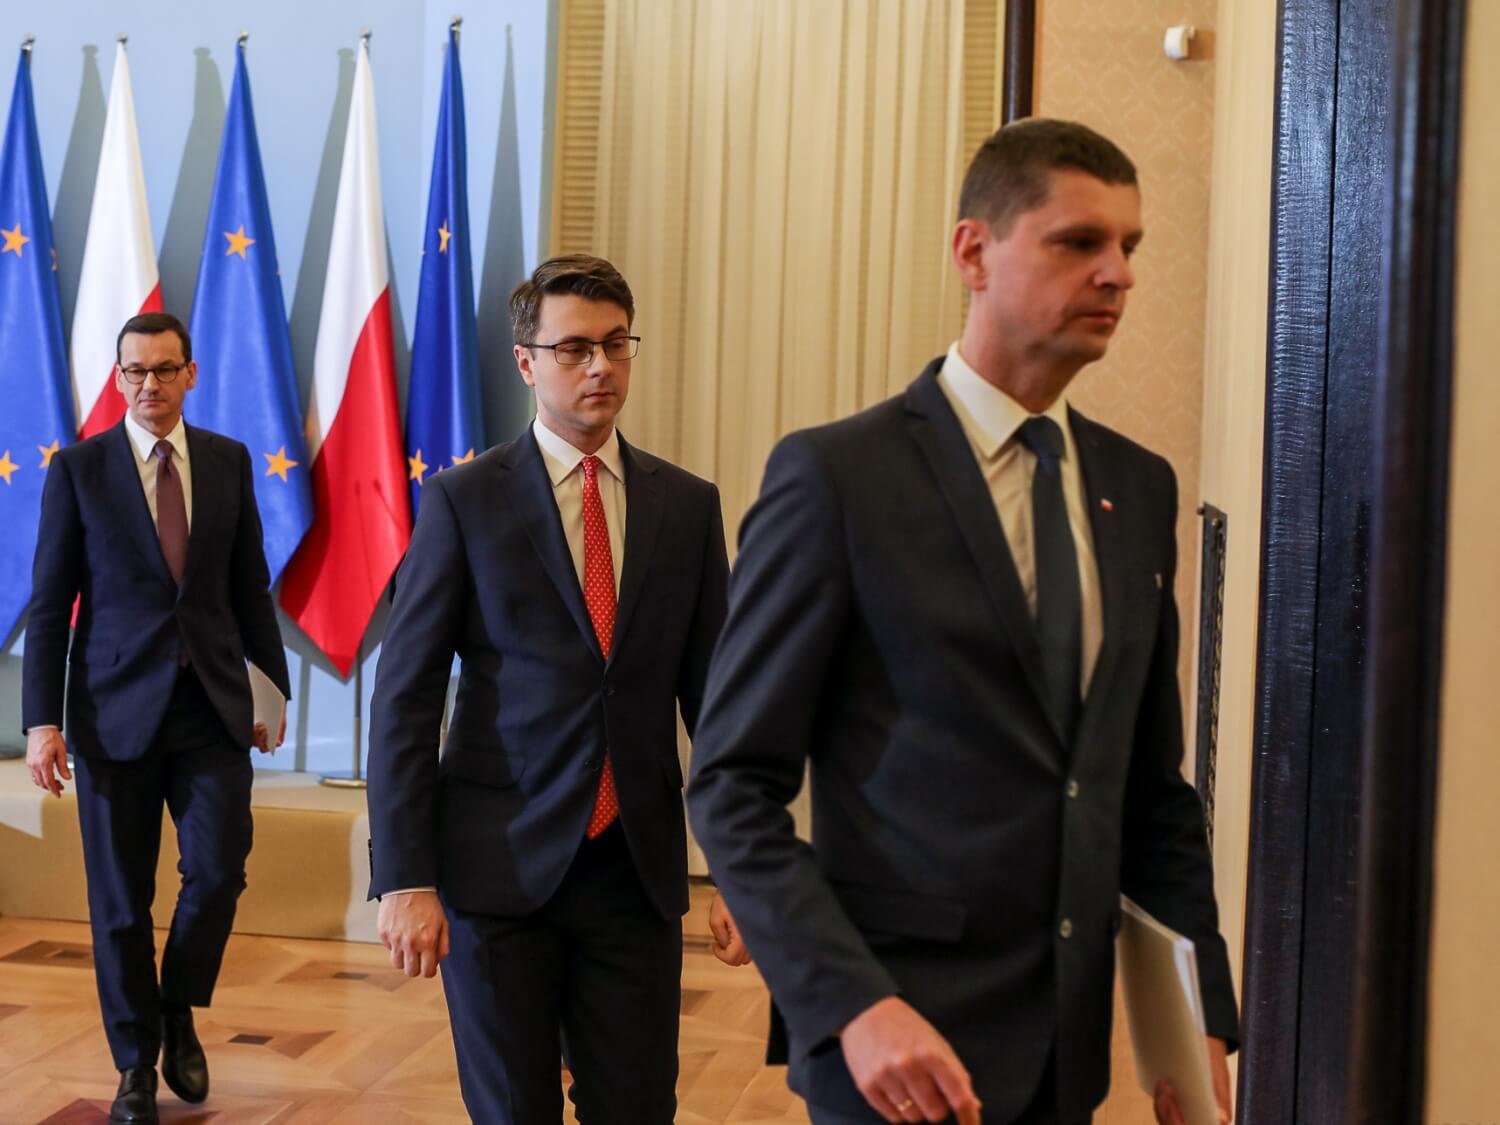 Od lewej premier Mateusz Morawiecki, rzecznik rządku Piotr Müller oraz minister edukacji narodowej Dariusz Piontkowski. Warszawa, 20 marca 2020 r.